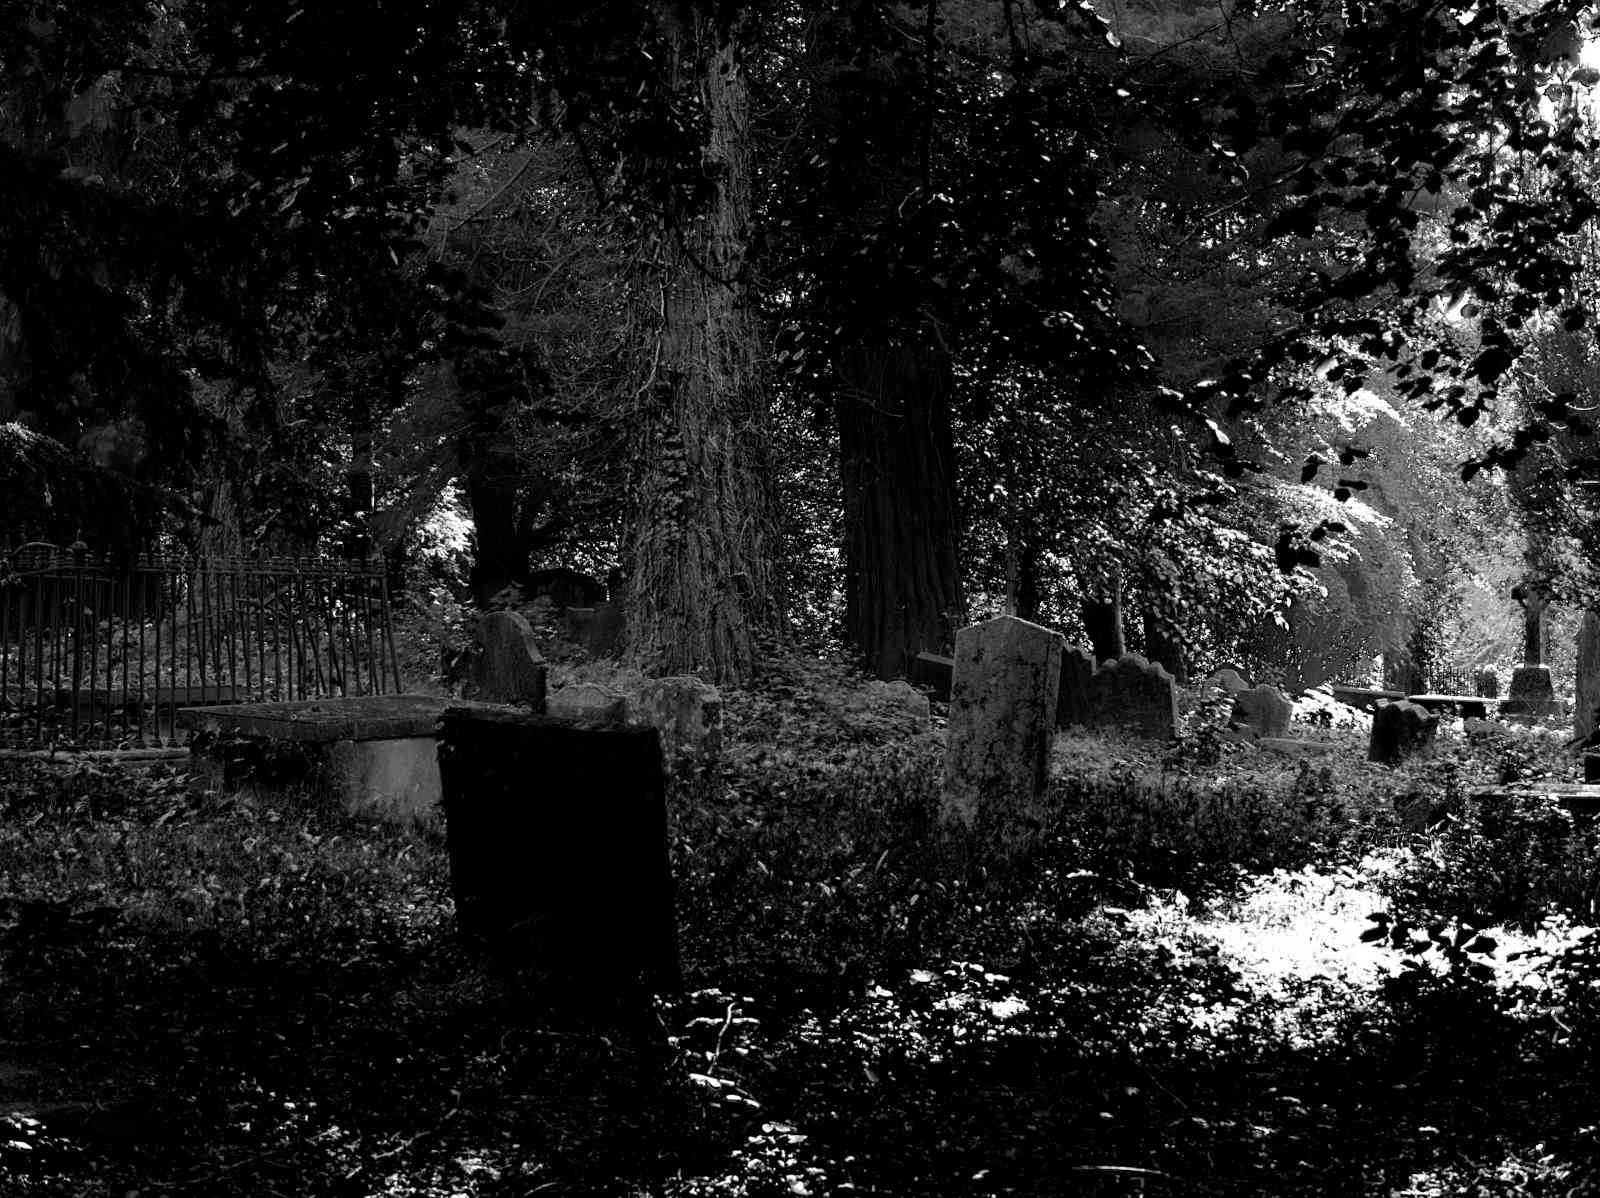 Friedhof Powerscourt Gardens 03